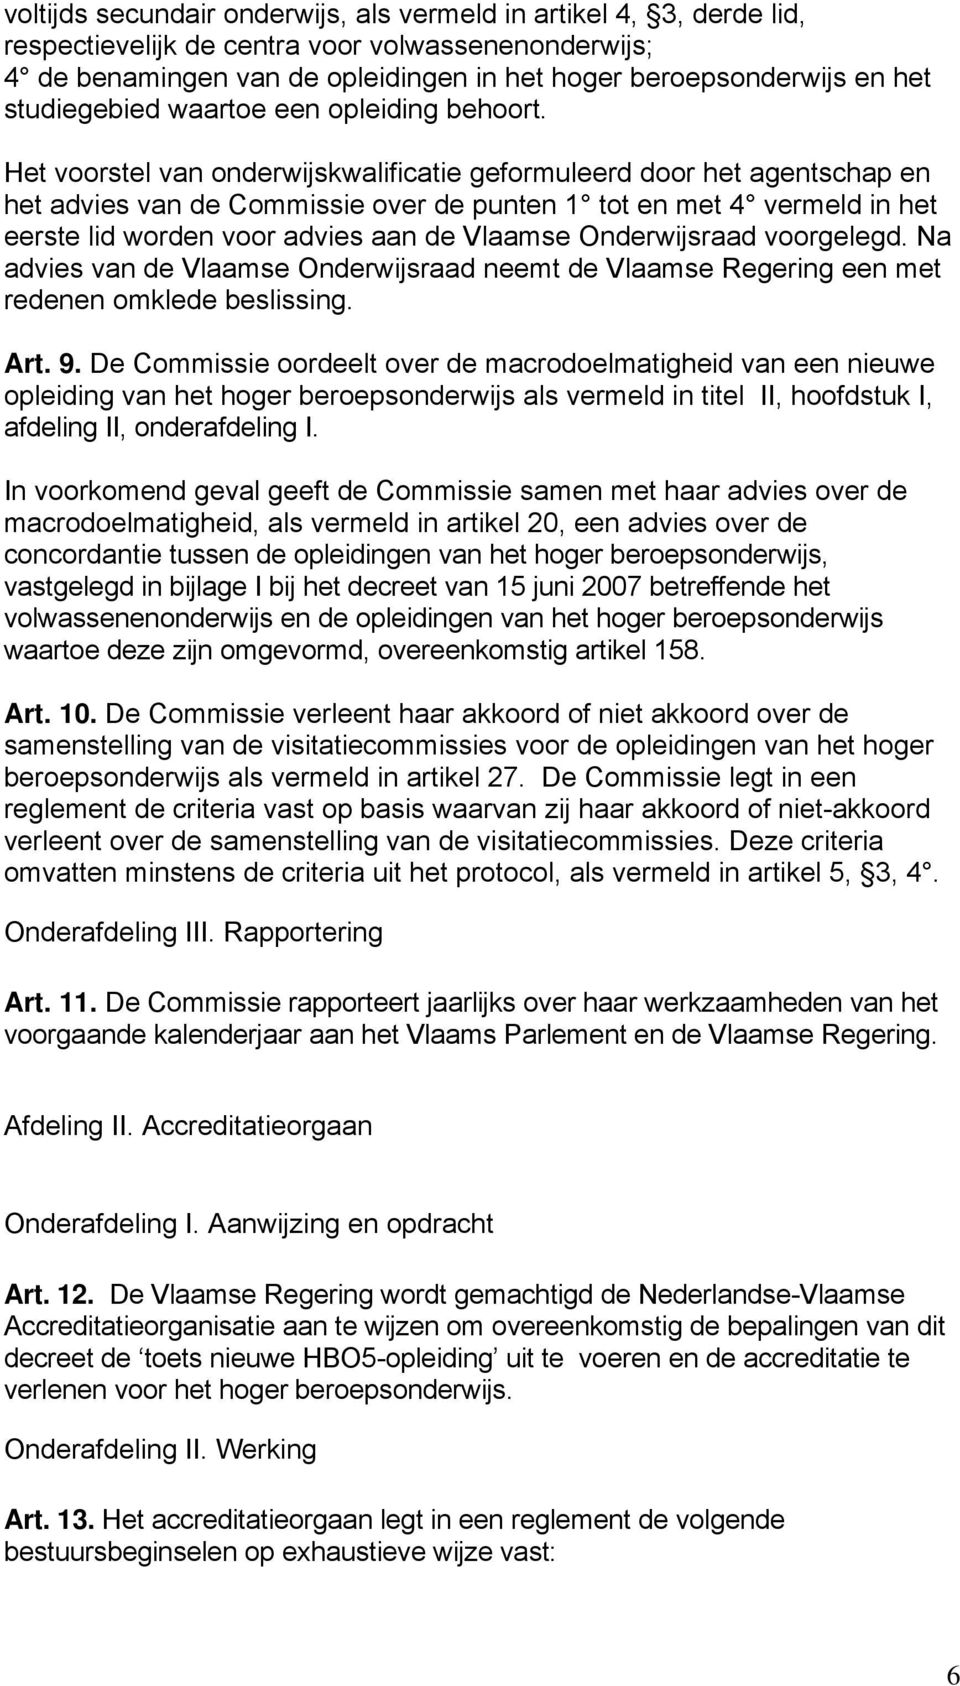 Het voorstel van onderwijskwalificatie geformuleerd door het agentschap en het advies van de Commissie over de punten 1 tot en met 4 vermeld in het eerste lid worden voor advies aan de Vlaamse